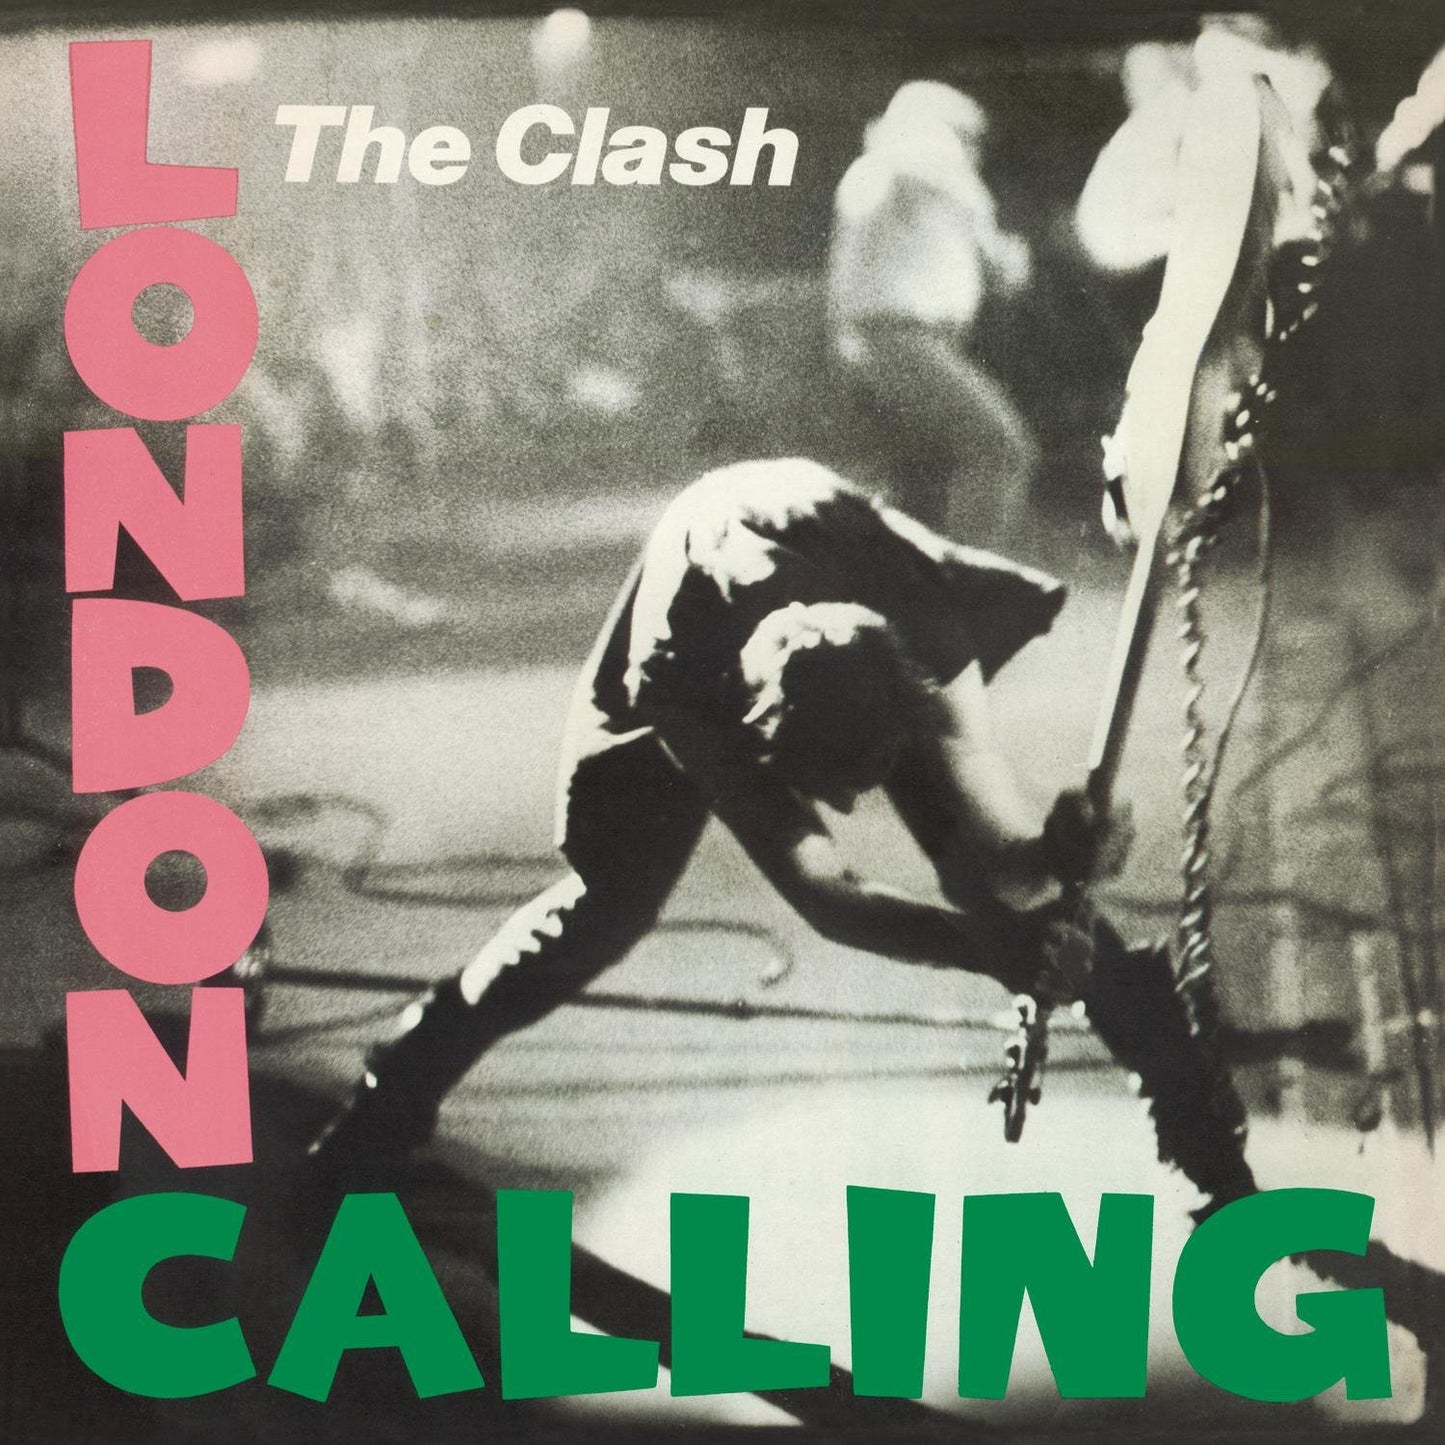 THE CLASH - LONDON CALLING - LP DE VINILO